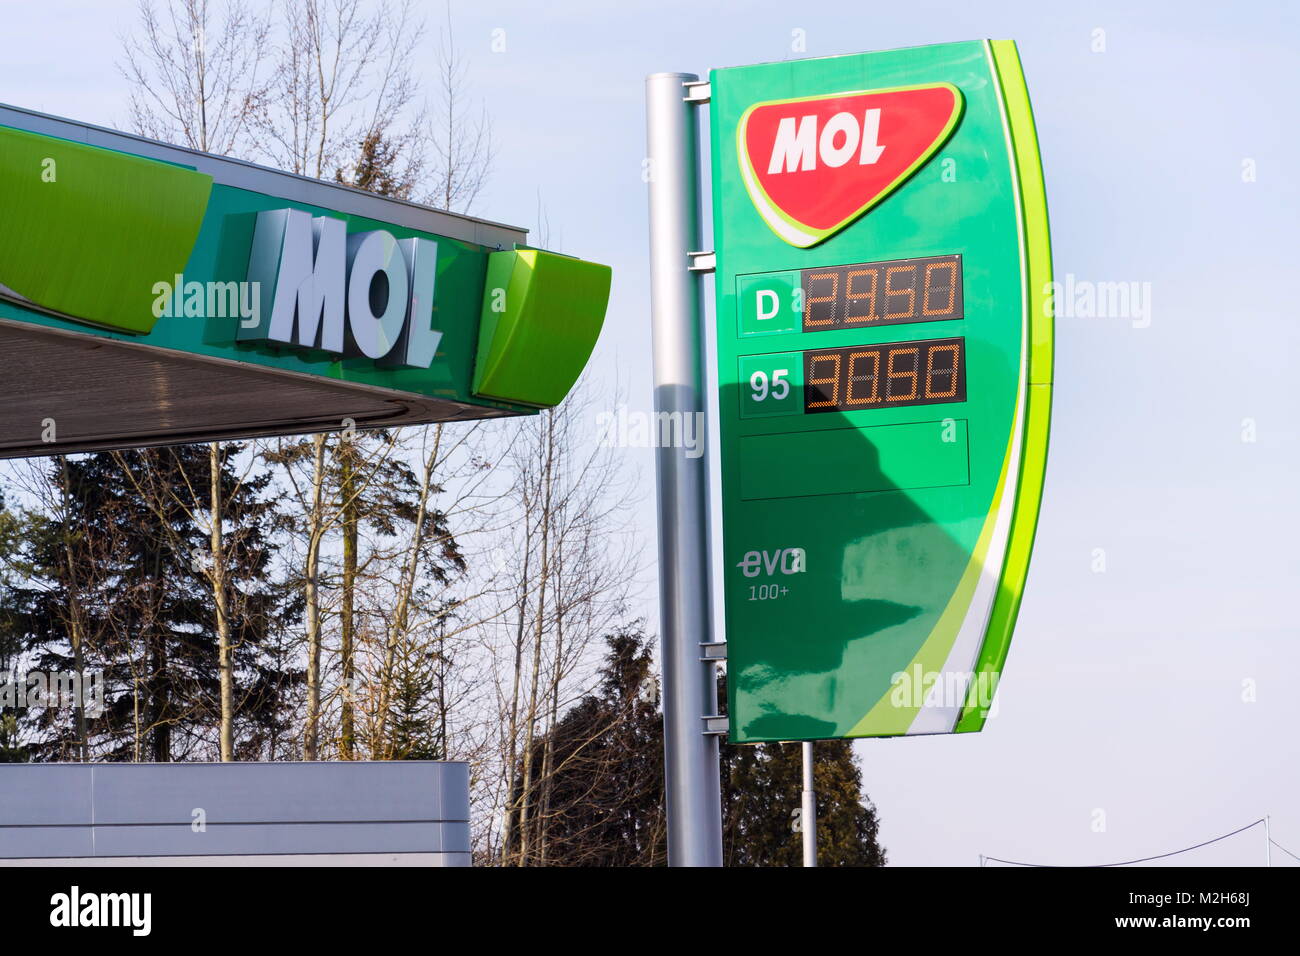 TABOR, RÉPUBLIQUE TCHÈQUE - 6 février 2018 : MOL group international oil and gas company logo sur station de carburant le 6 février 2018 à Tabor, République Tchèque Banque D'Images